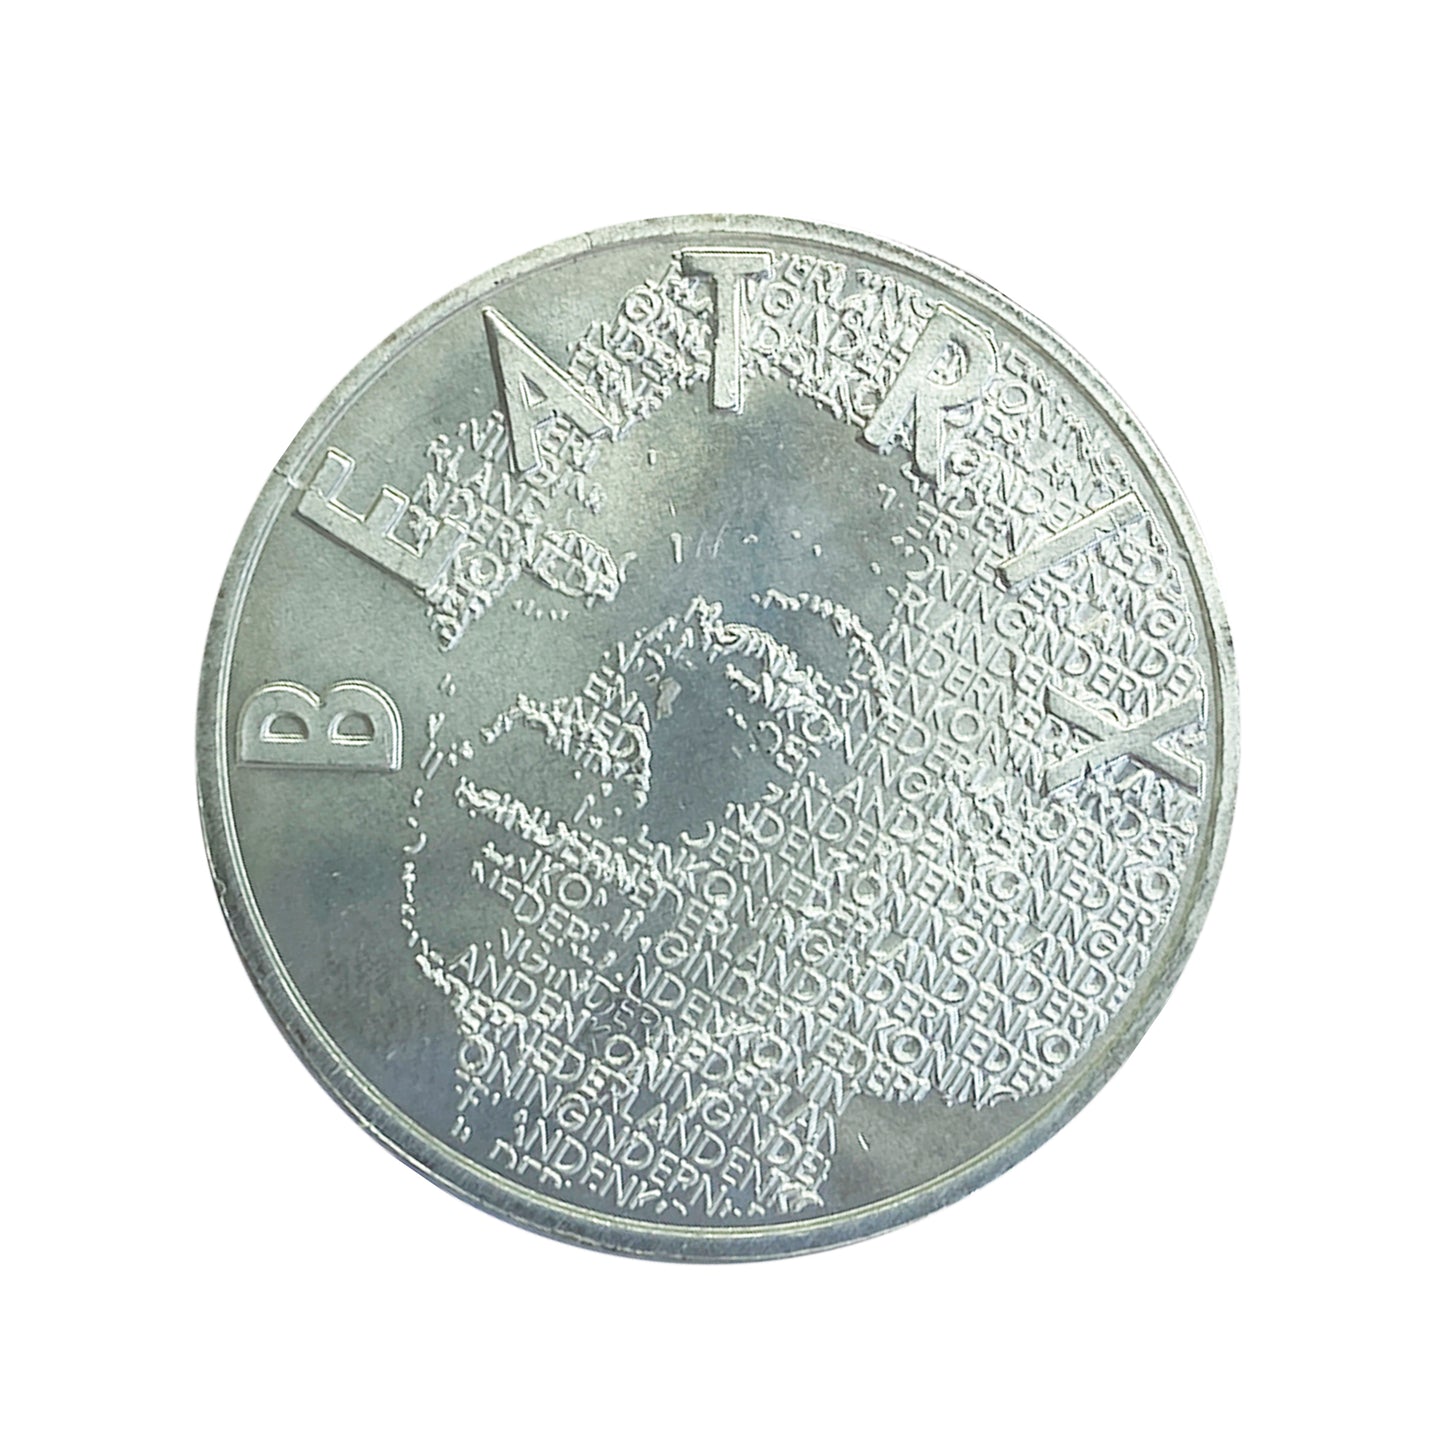 Países Bajos - Moneda 5 euros en plata 2003 - Vincent van Gogh